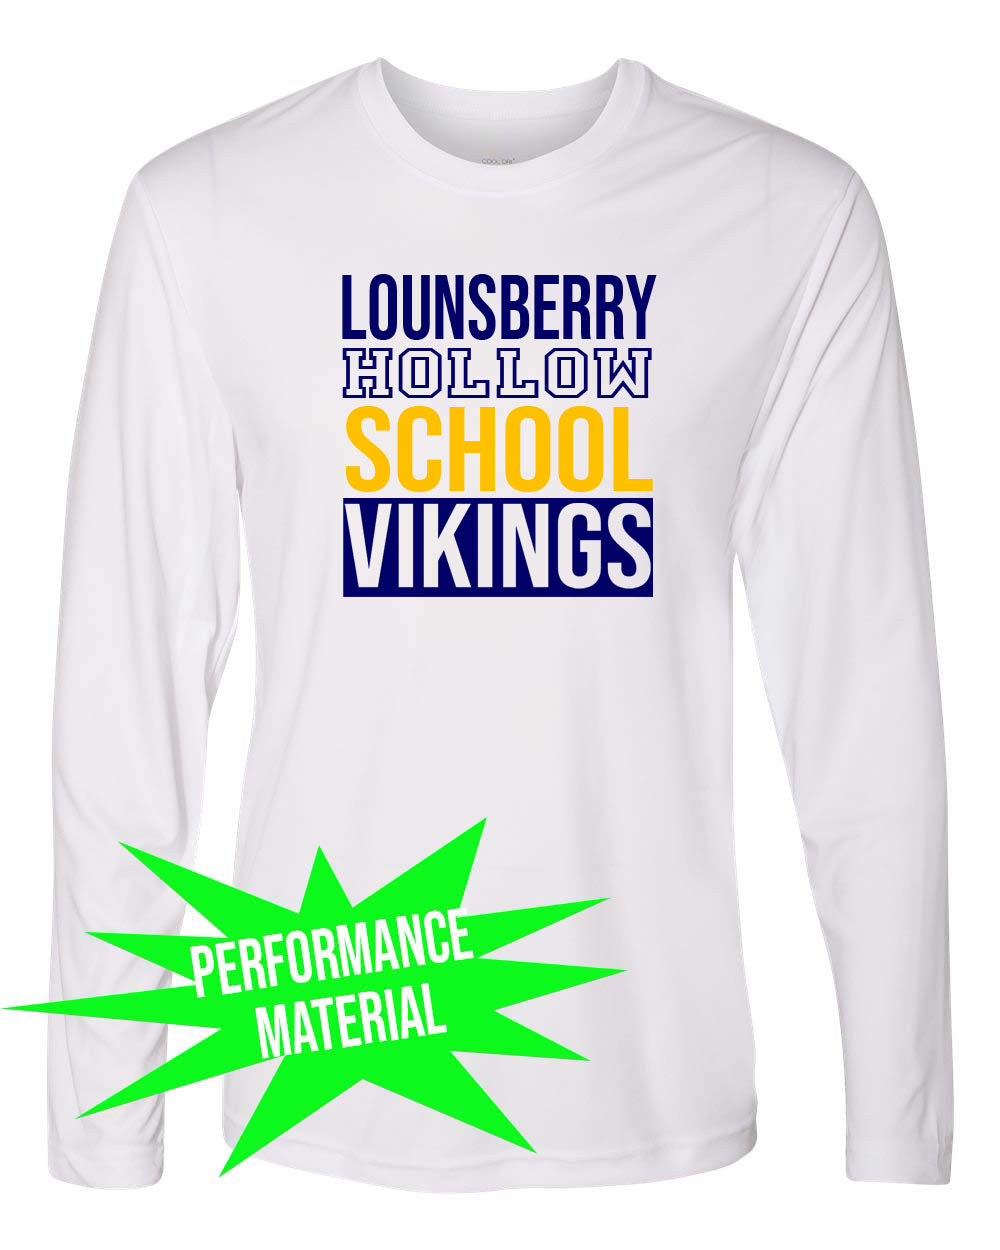 Lounsberry Hollow Performance Material Long Sleeve Shirt Design 1